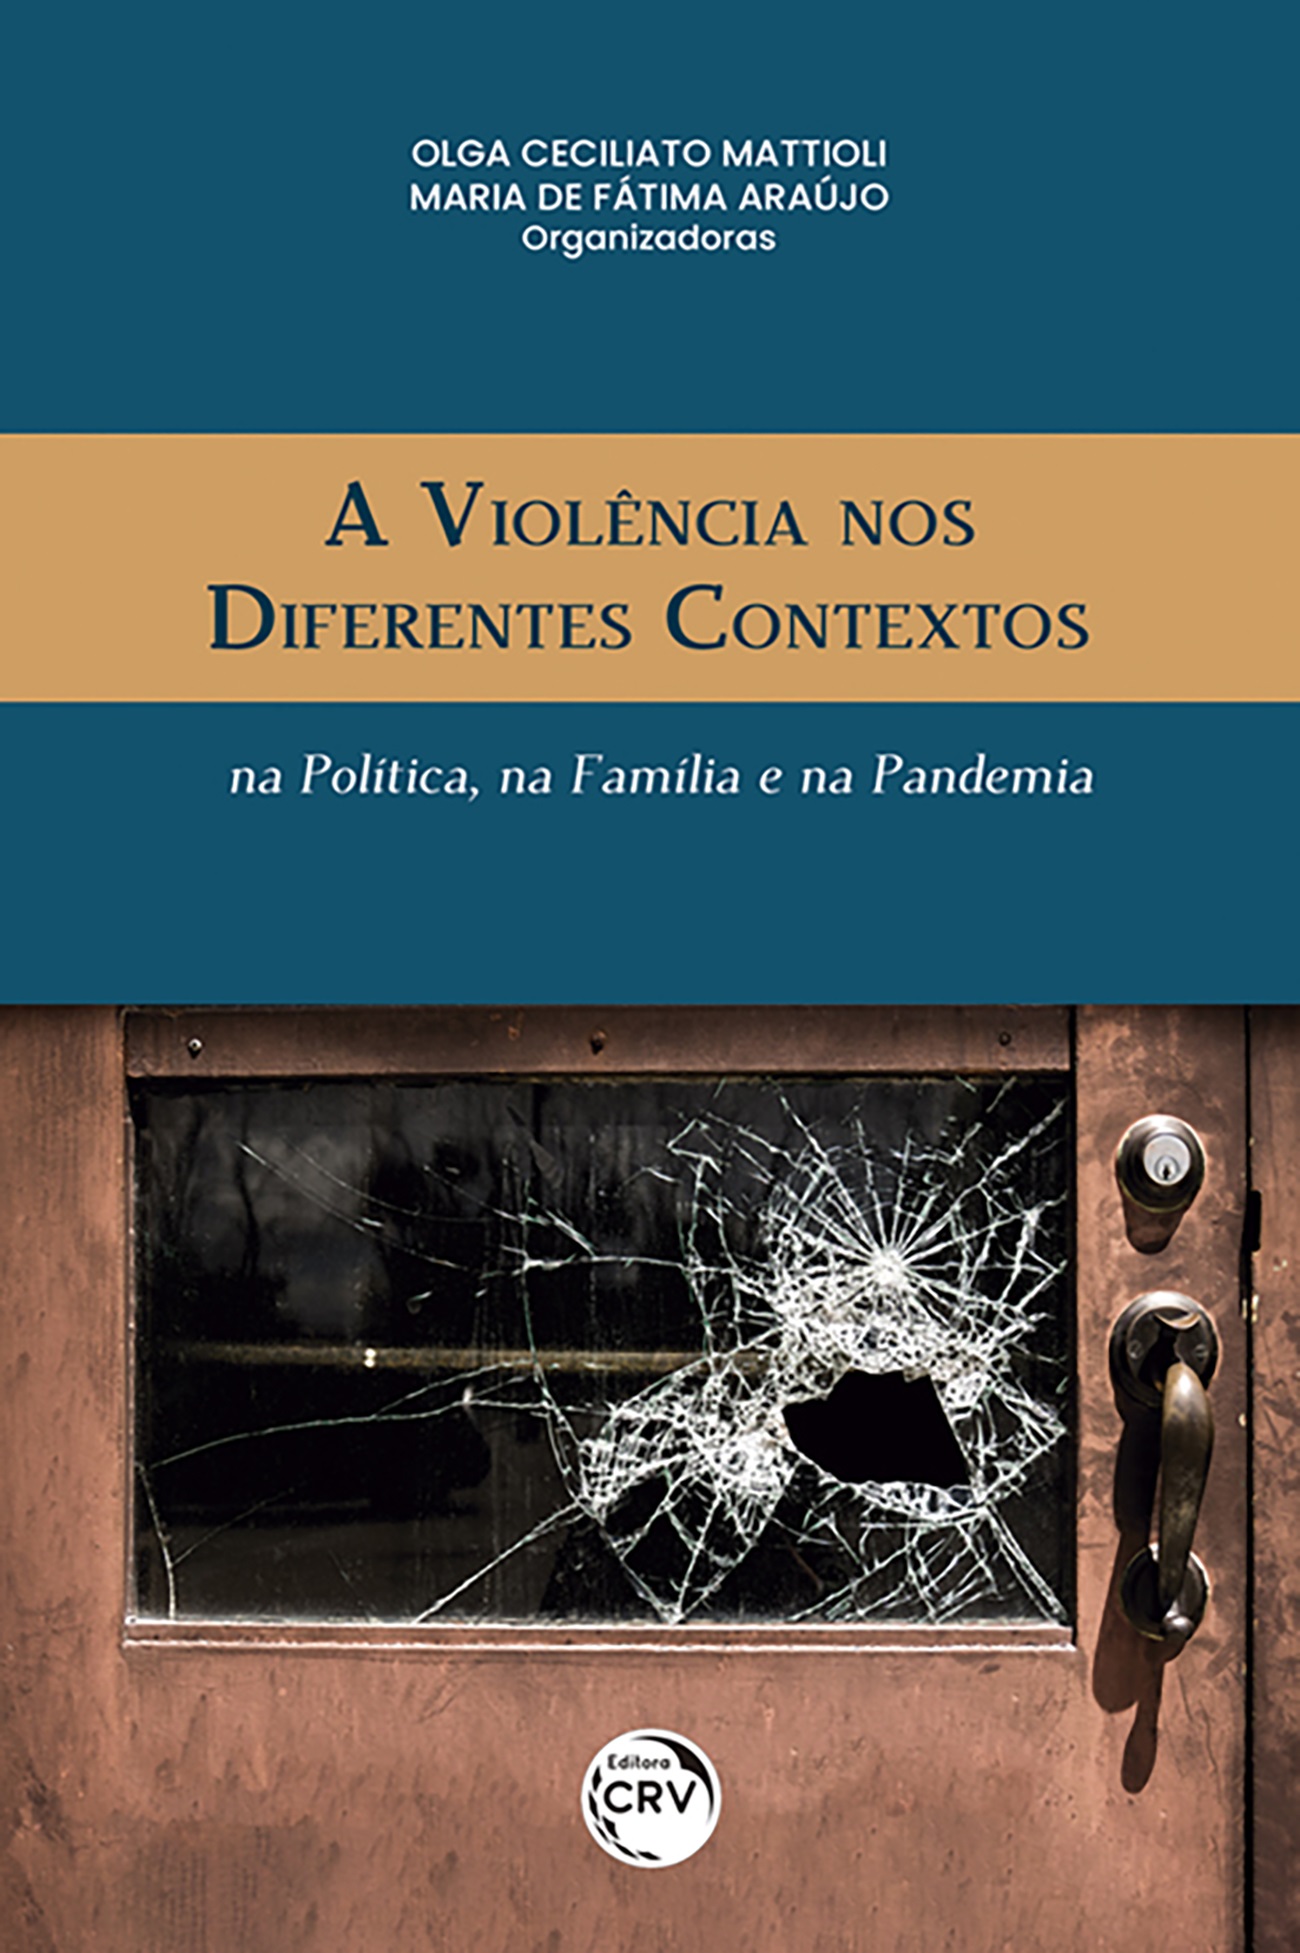 A VIOLÊNCIA NOS DIFERENTES CONTEXTOS: <br>na Política, na Família, e na Pandemia